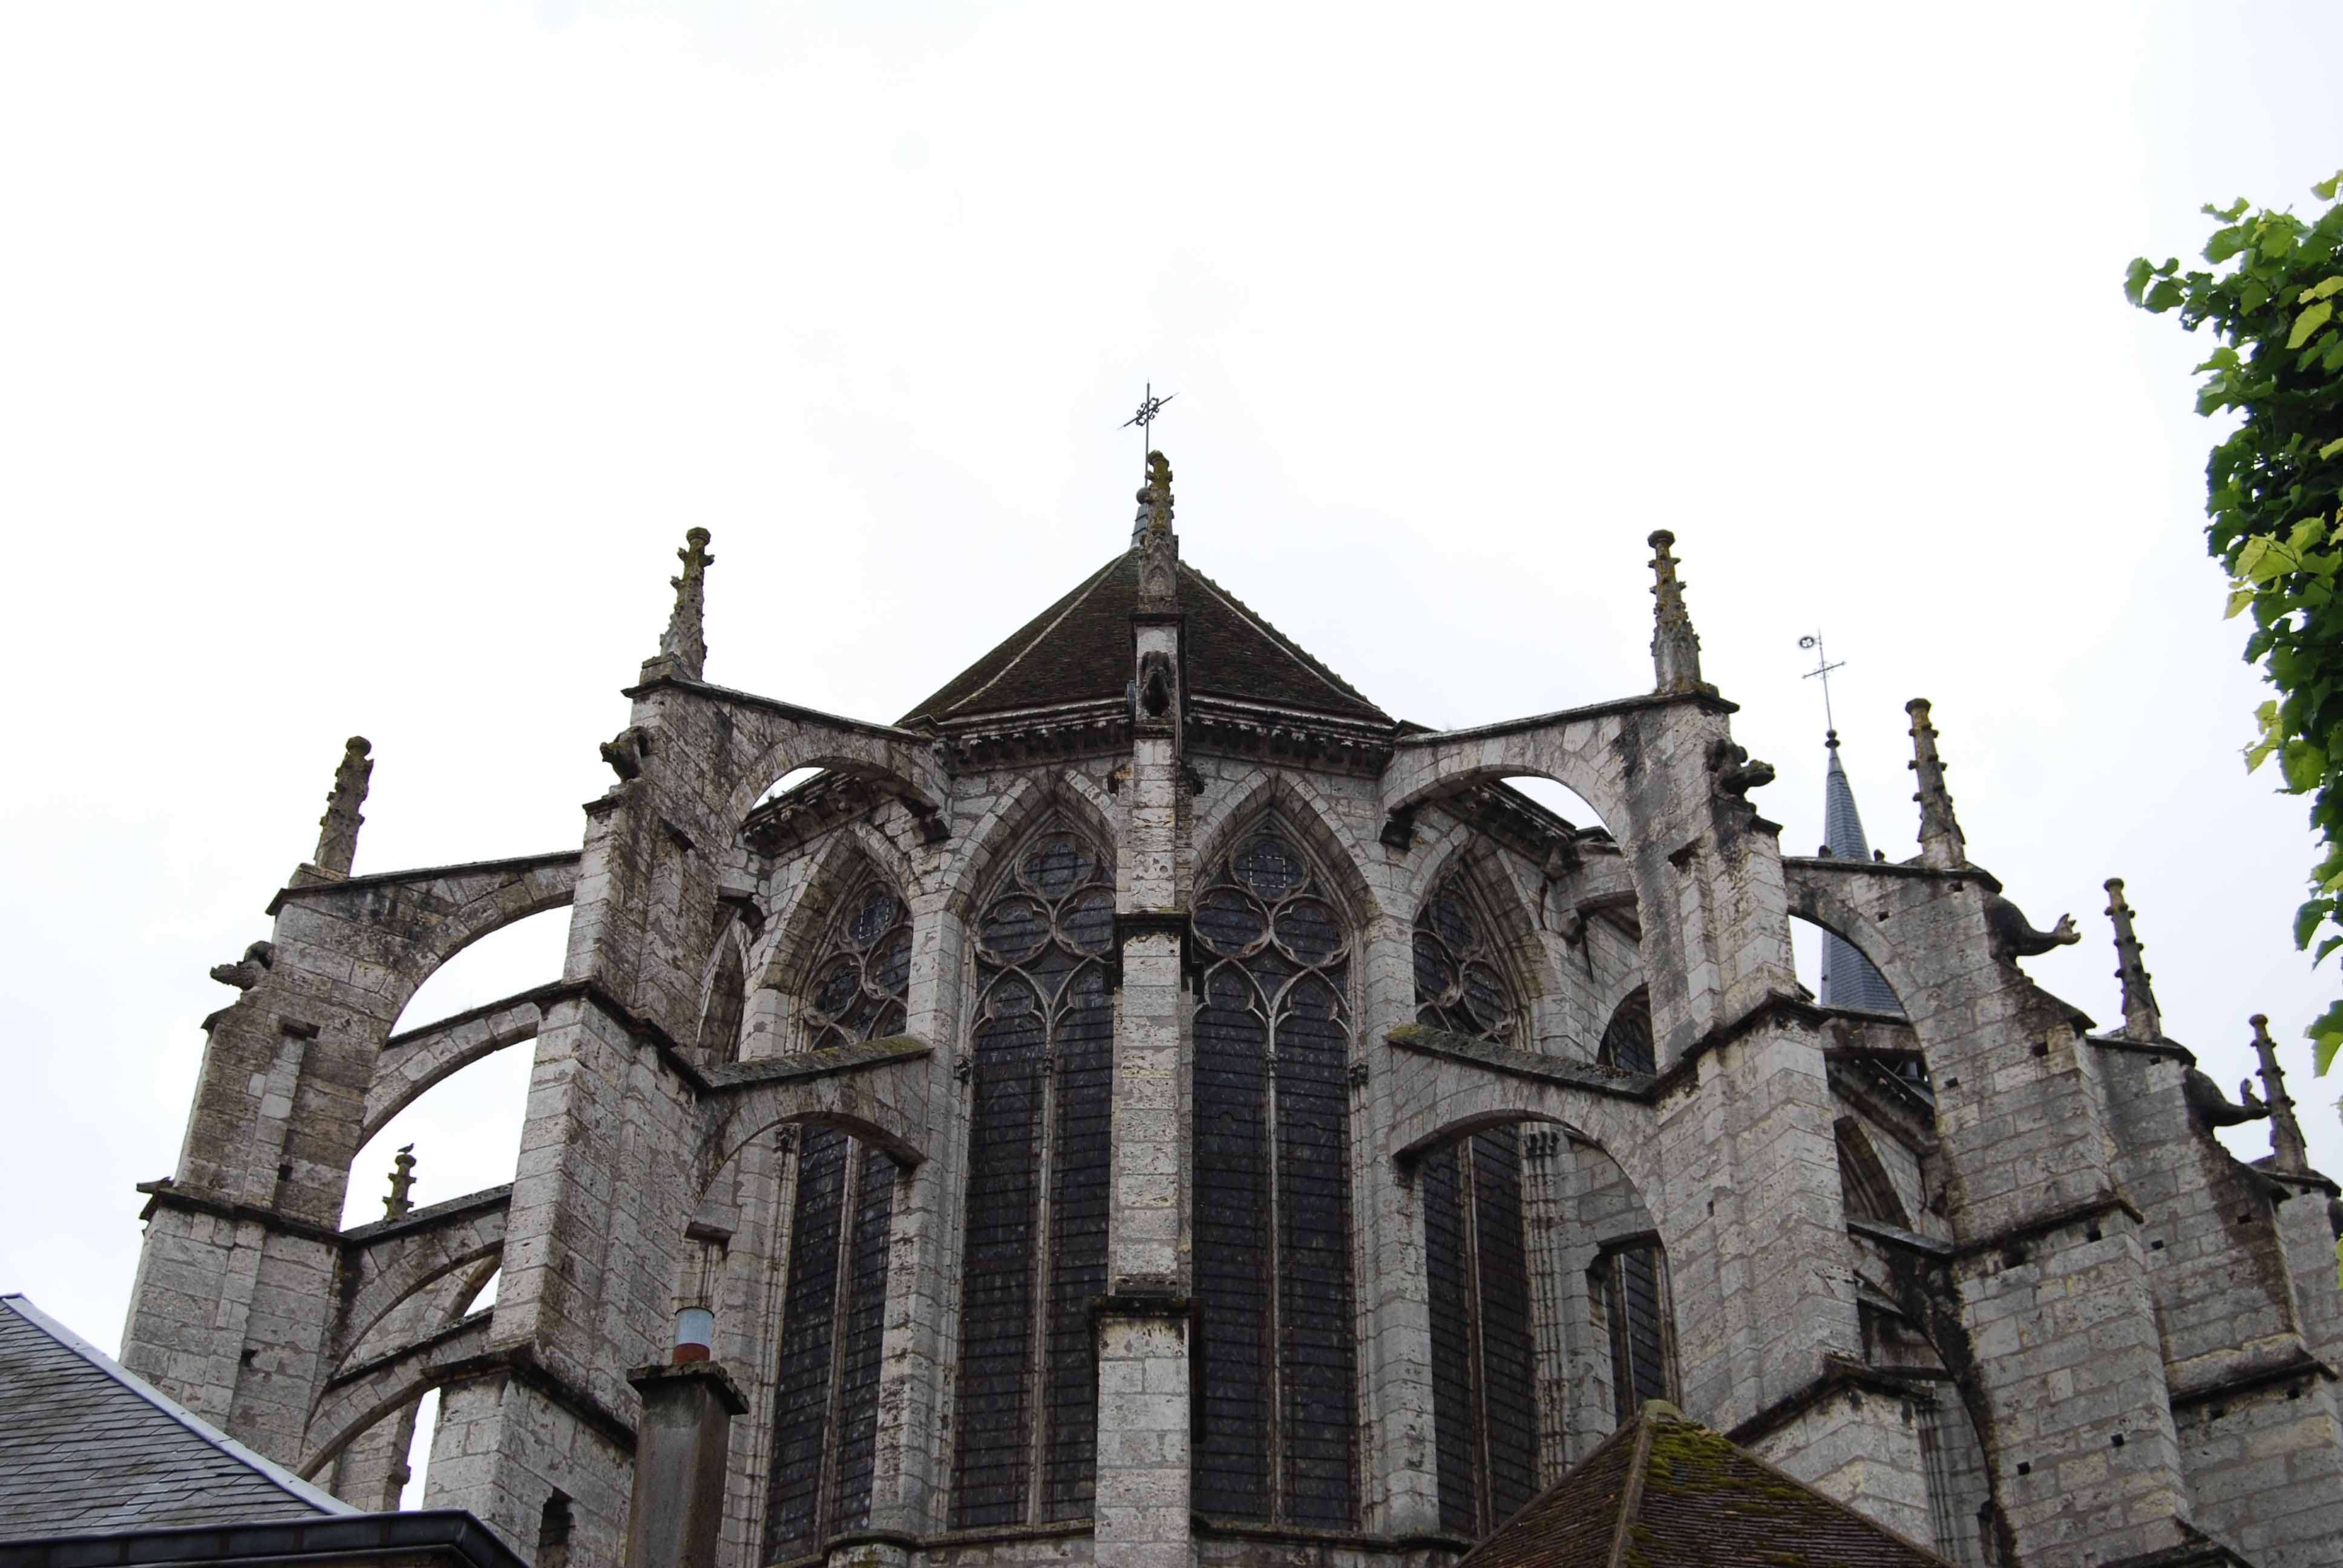 Un paseo por Chartres. Arte y Paisaje - Chartres: Arte, espiritualidad y esoterismo. (7)